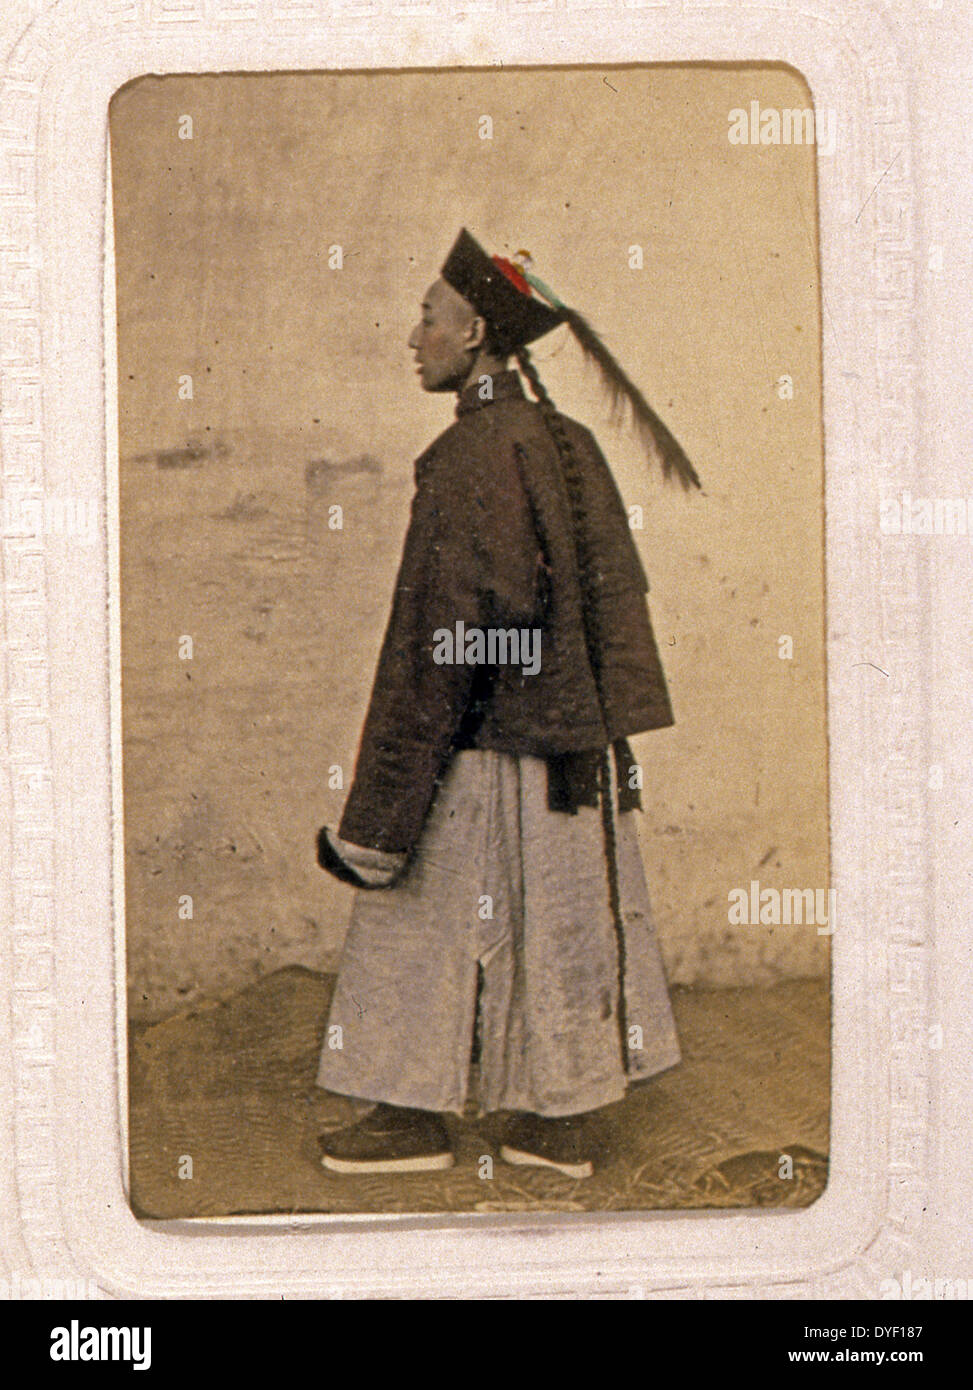 Portraits d'une bureaucrate chinois (Mandarin) par John Thomson, 1837-1921, photographe. Publié : entre 1870 et 1872. Banque D'Images